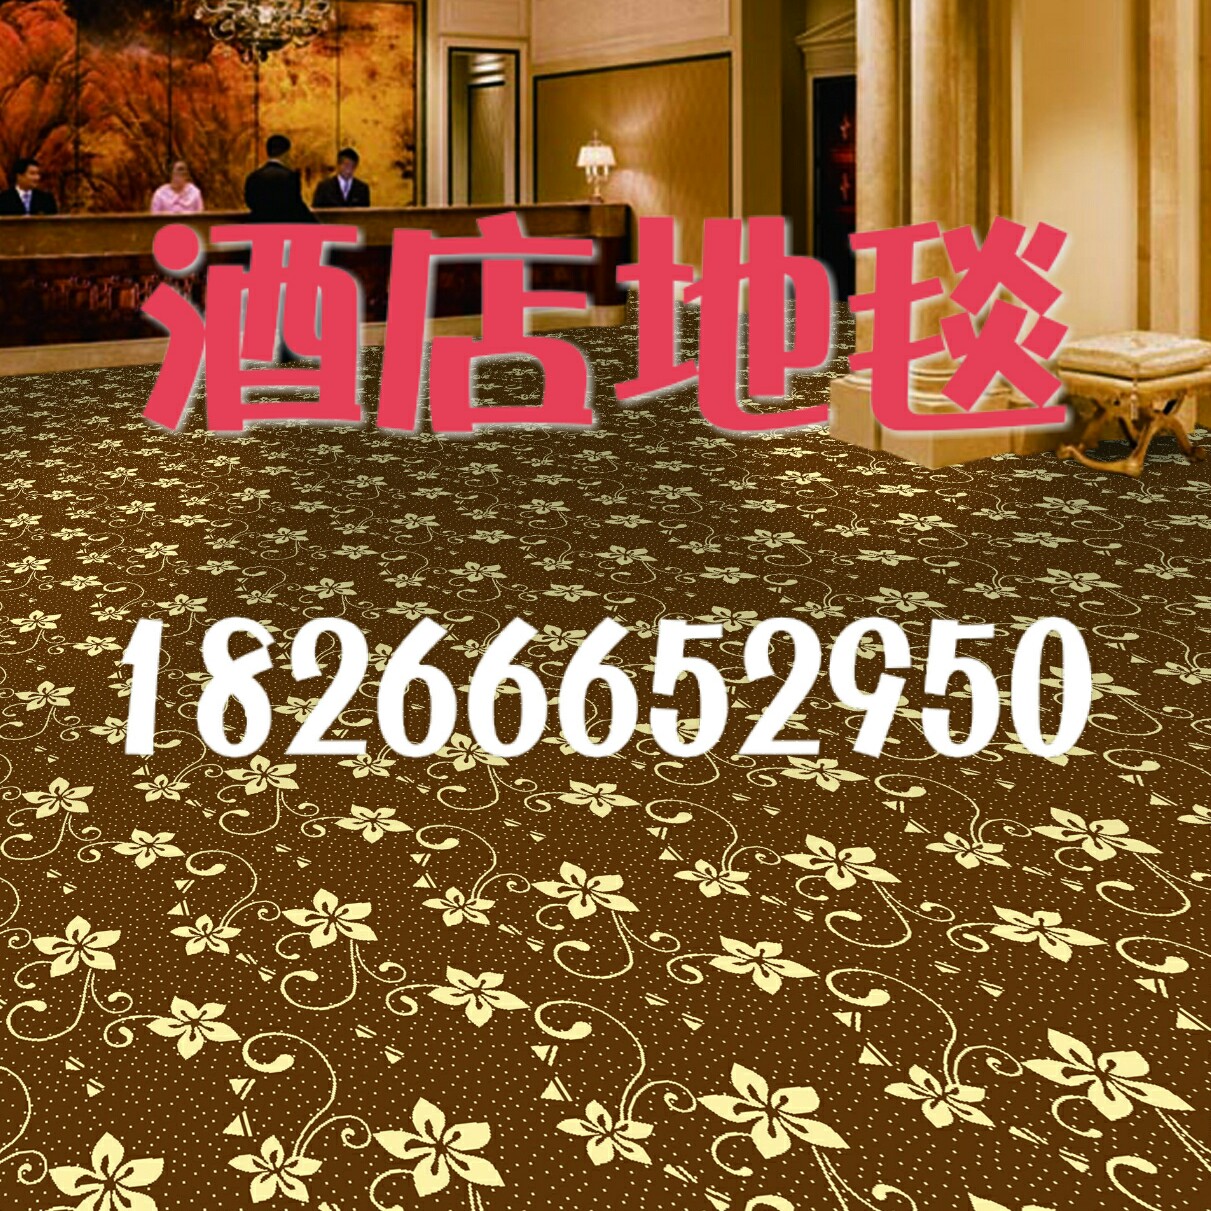 供应青岛酒店餐厅地毯 酒店满铺地毯 酒店尼龙地毯 厂家批发青岛酒店地毯 承接青岛酒店地毯工程